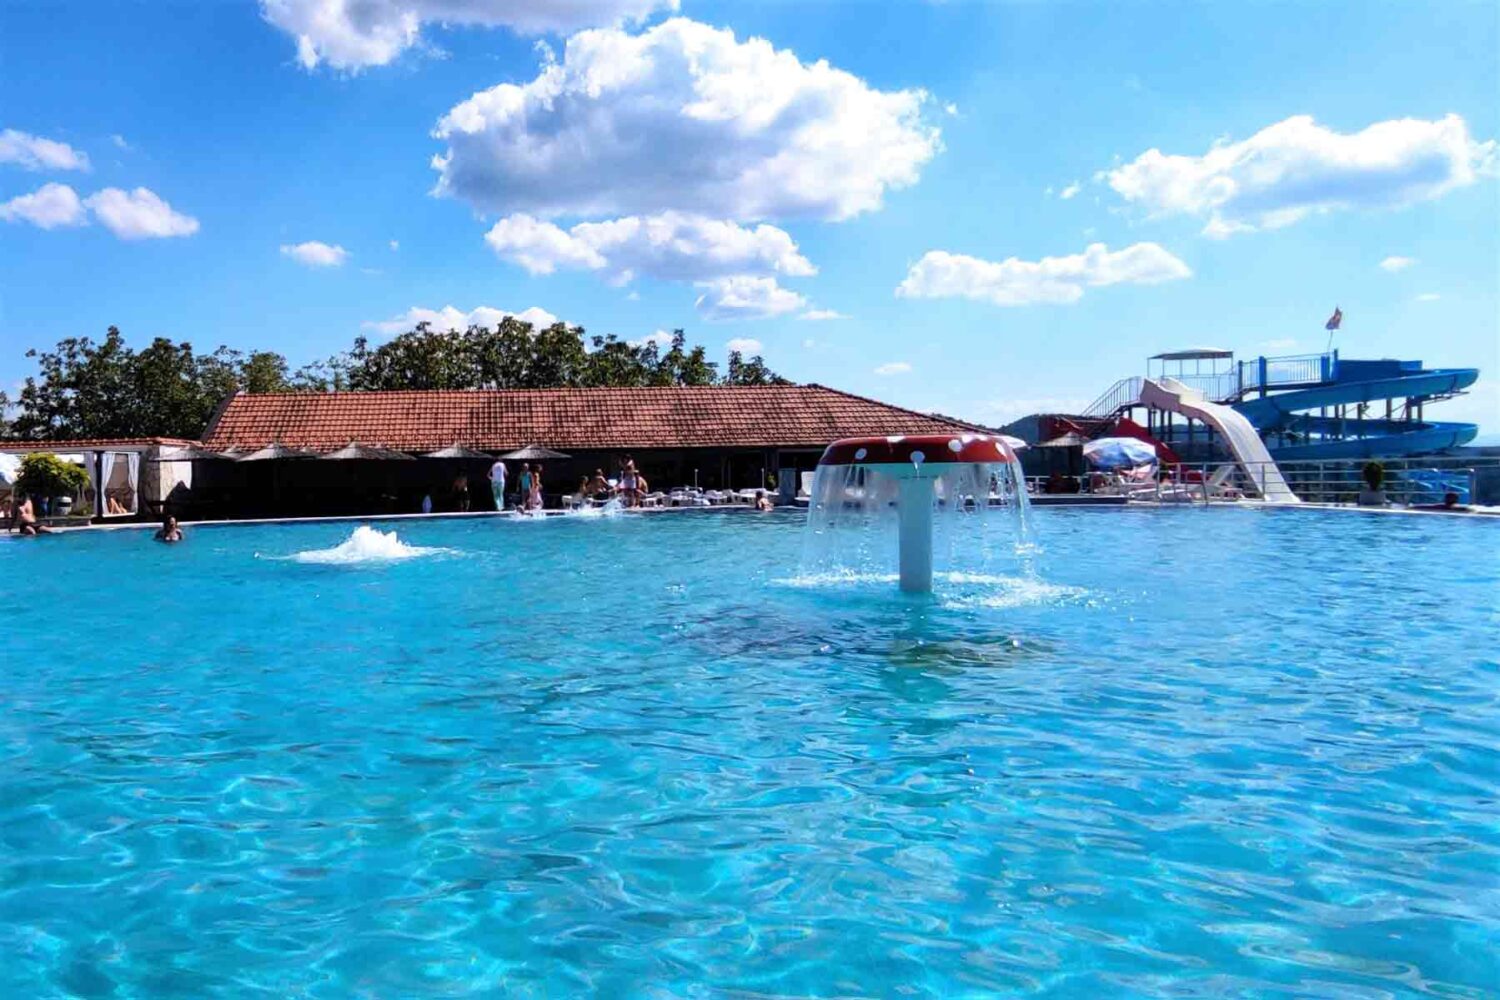 Aqua park Vidik ima prelepe uslove za uživanje